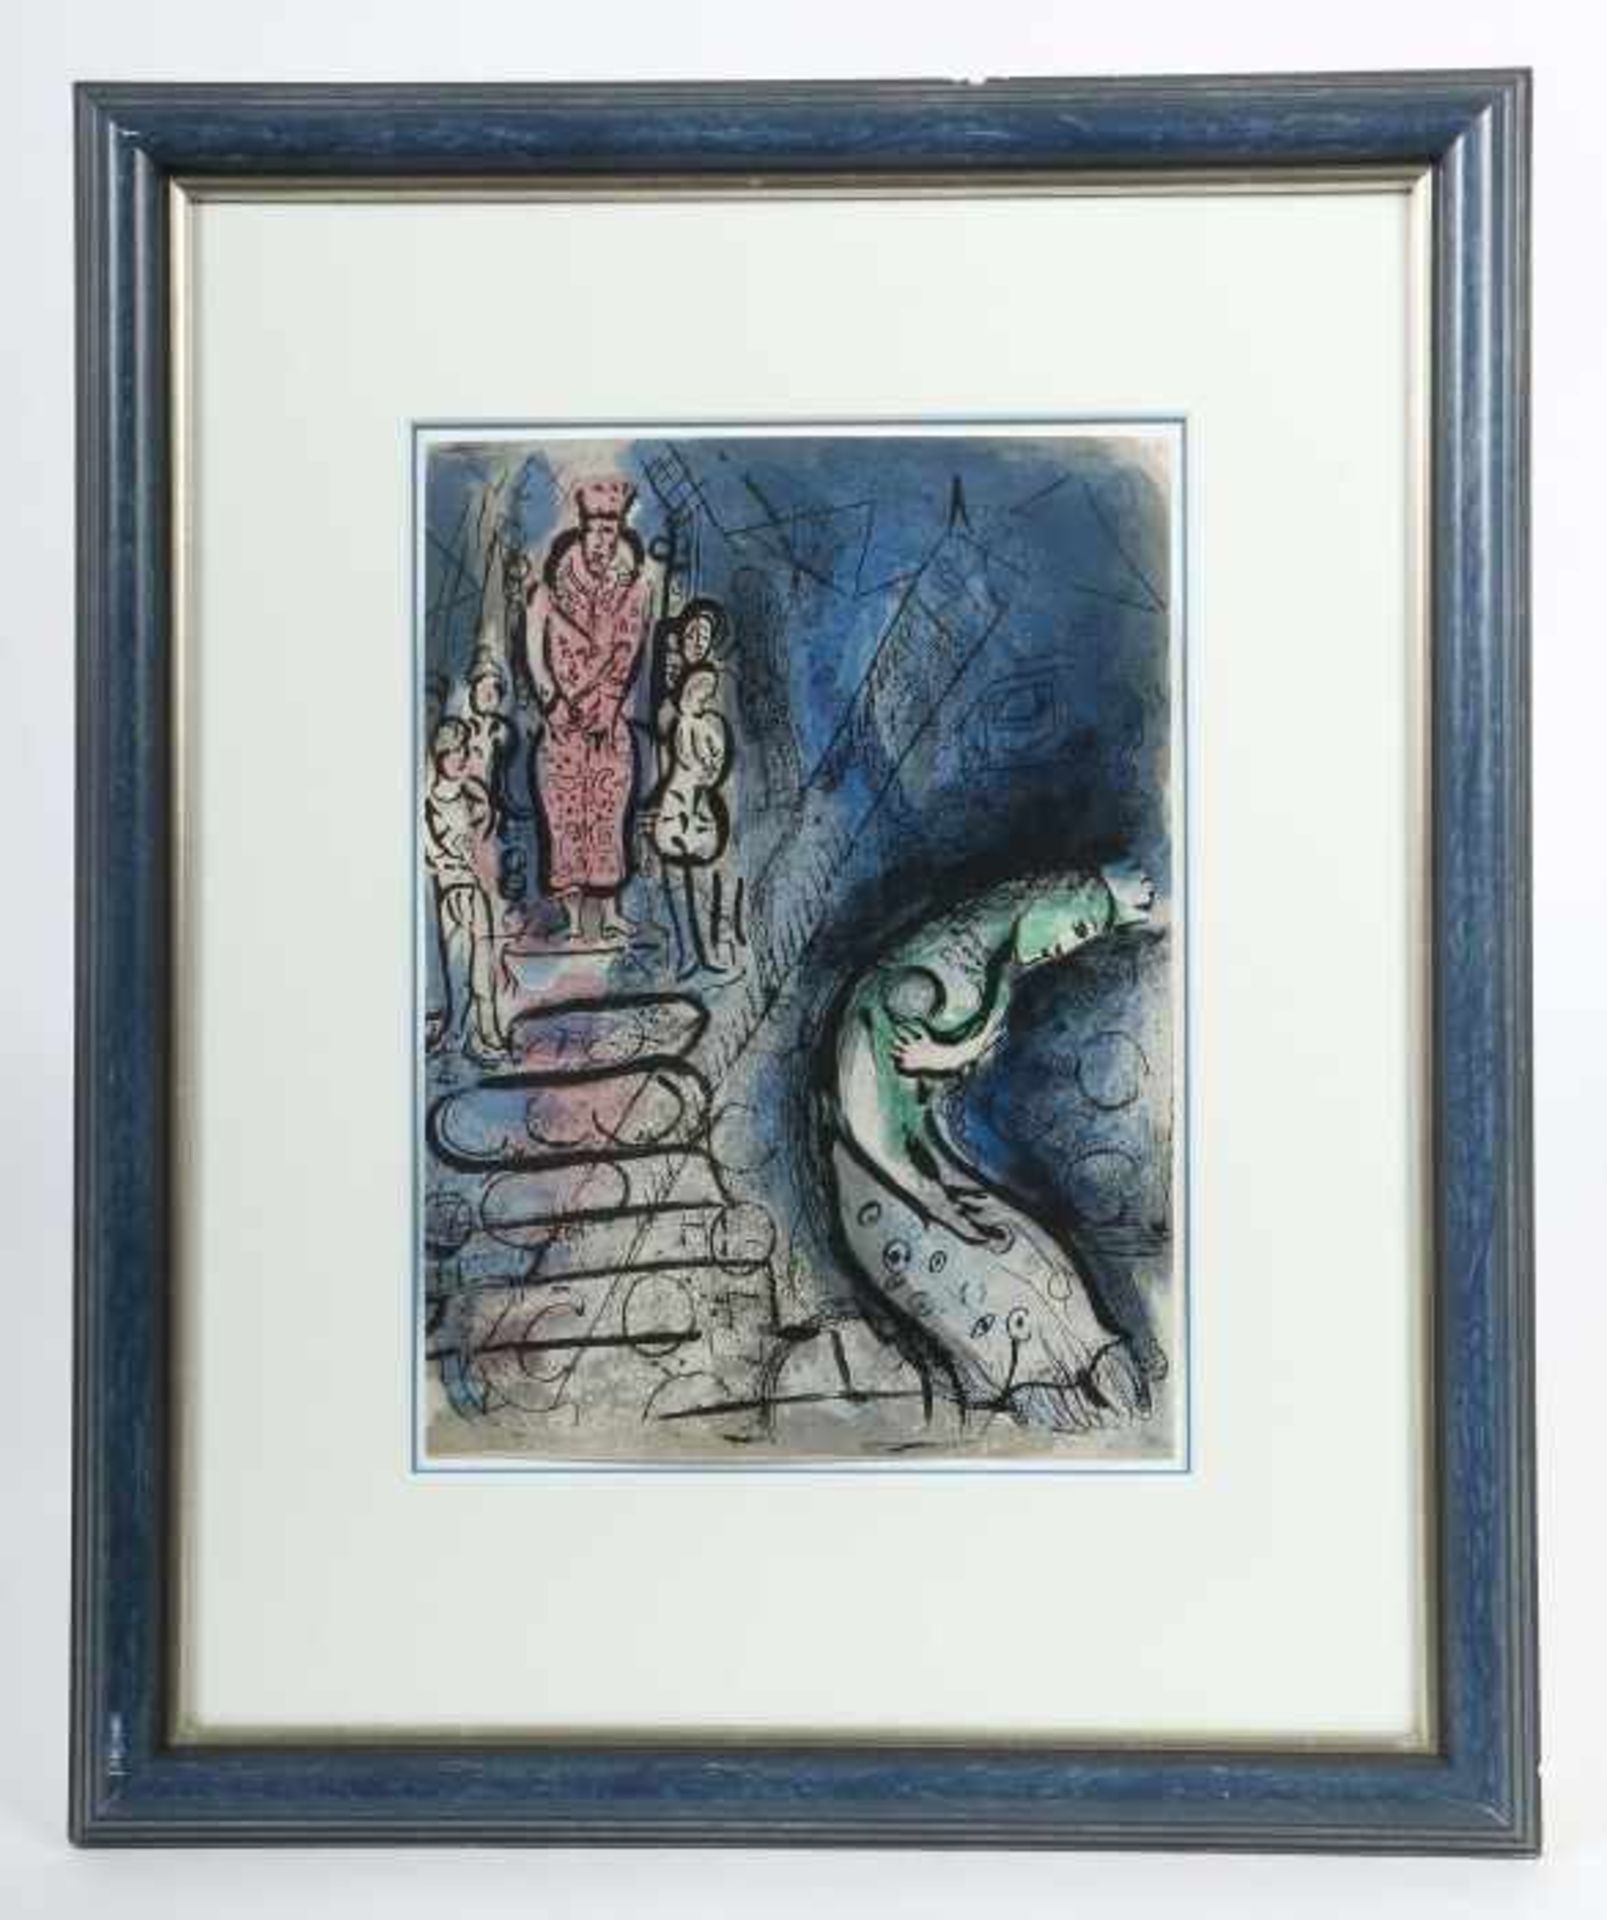 Chagall, Marc 1887 - 1985, russischer Maler, Illustrator, Bildhauer und Keramiker. "König - Bild 2 aus 2